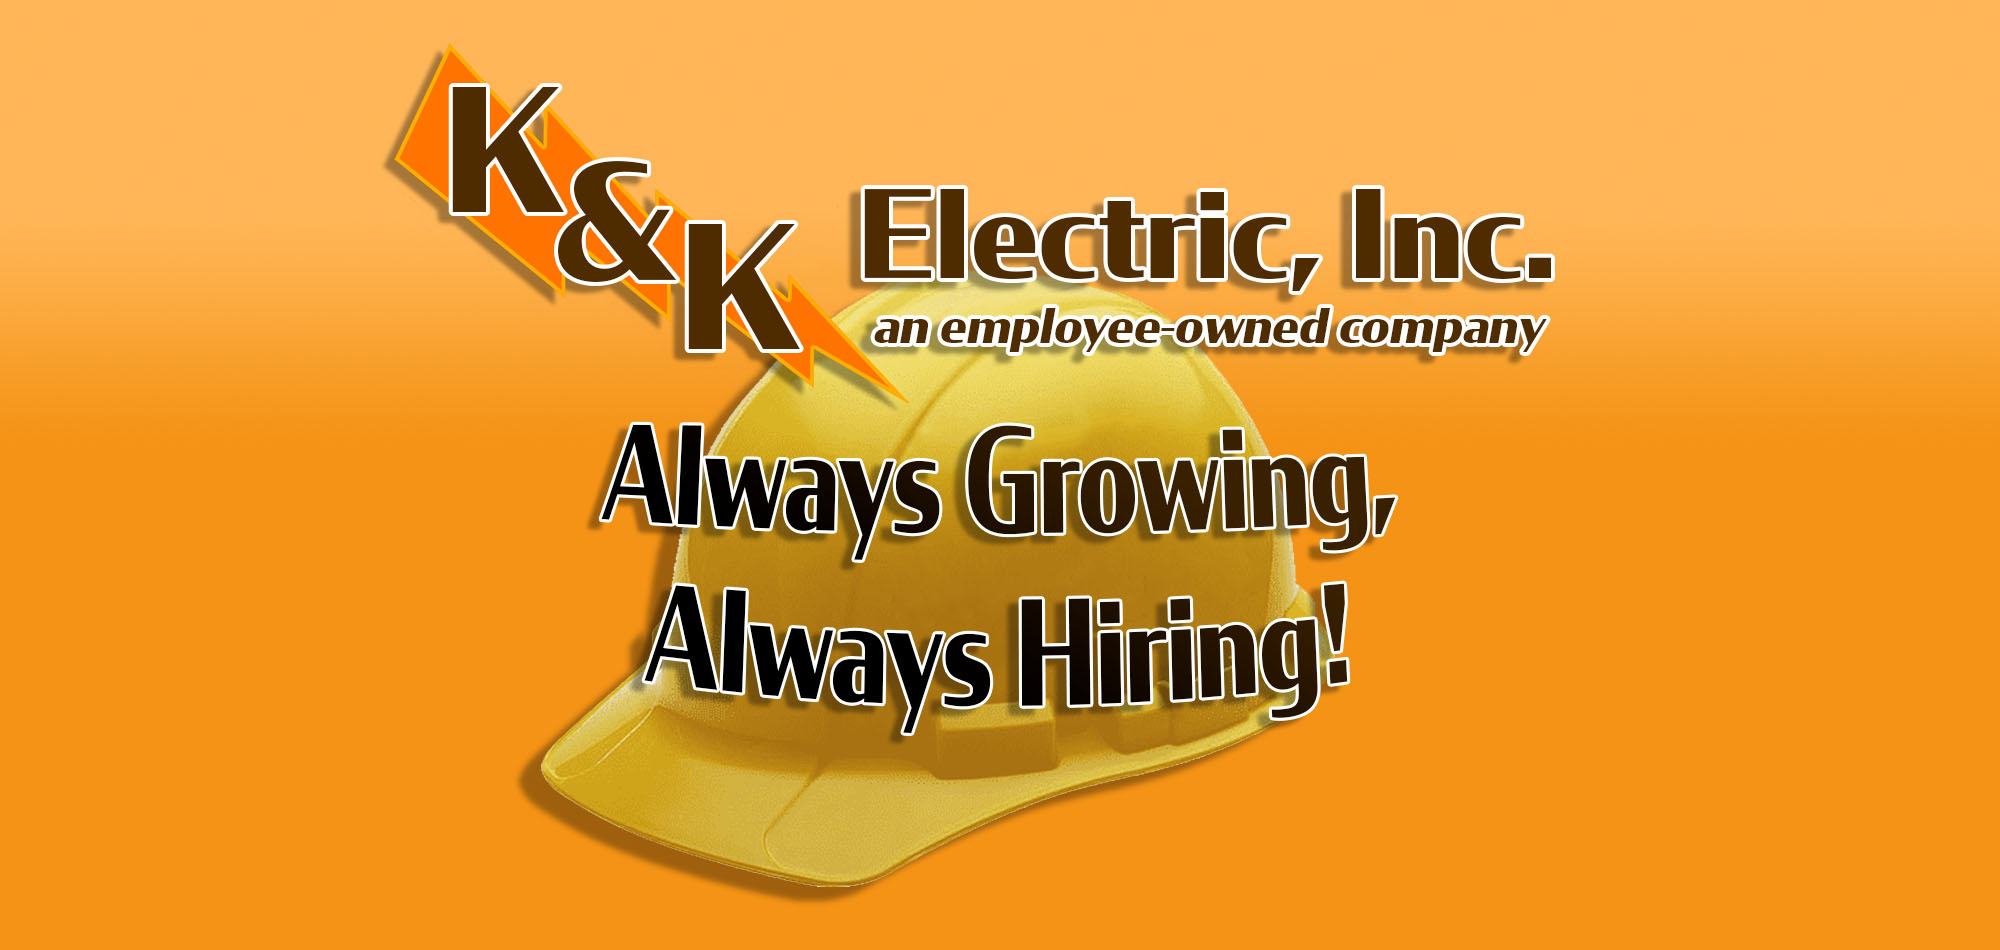 K&K Electric, Inc. - Always Growing, Always Hiring!